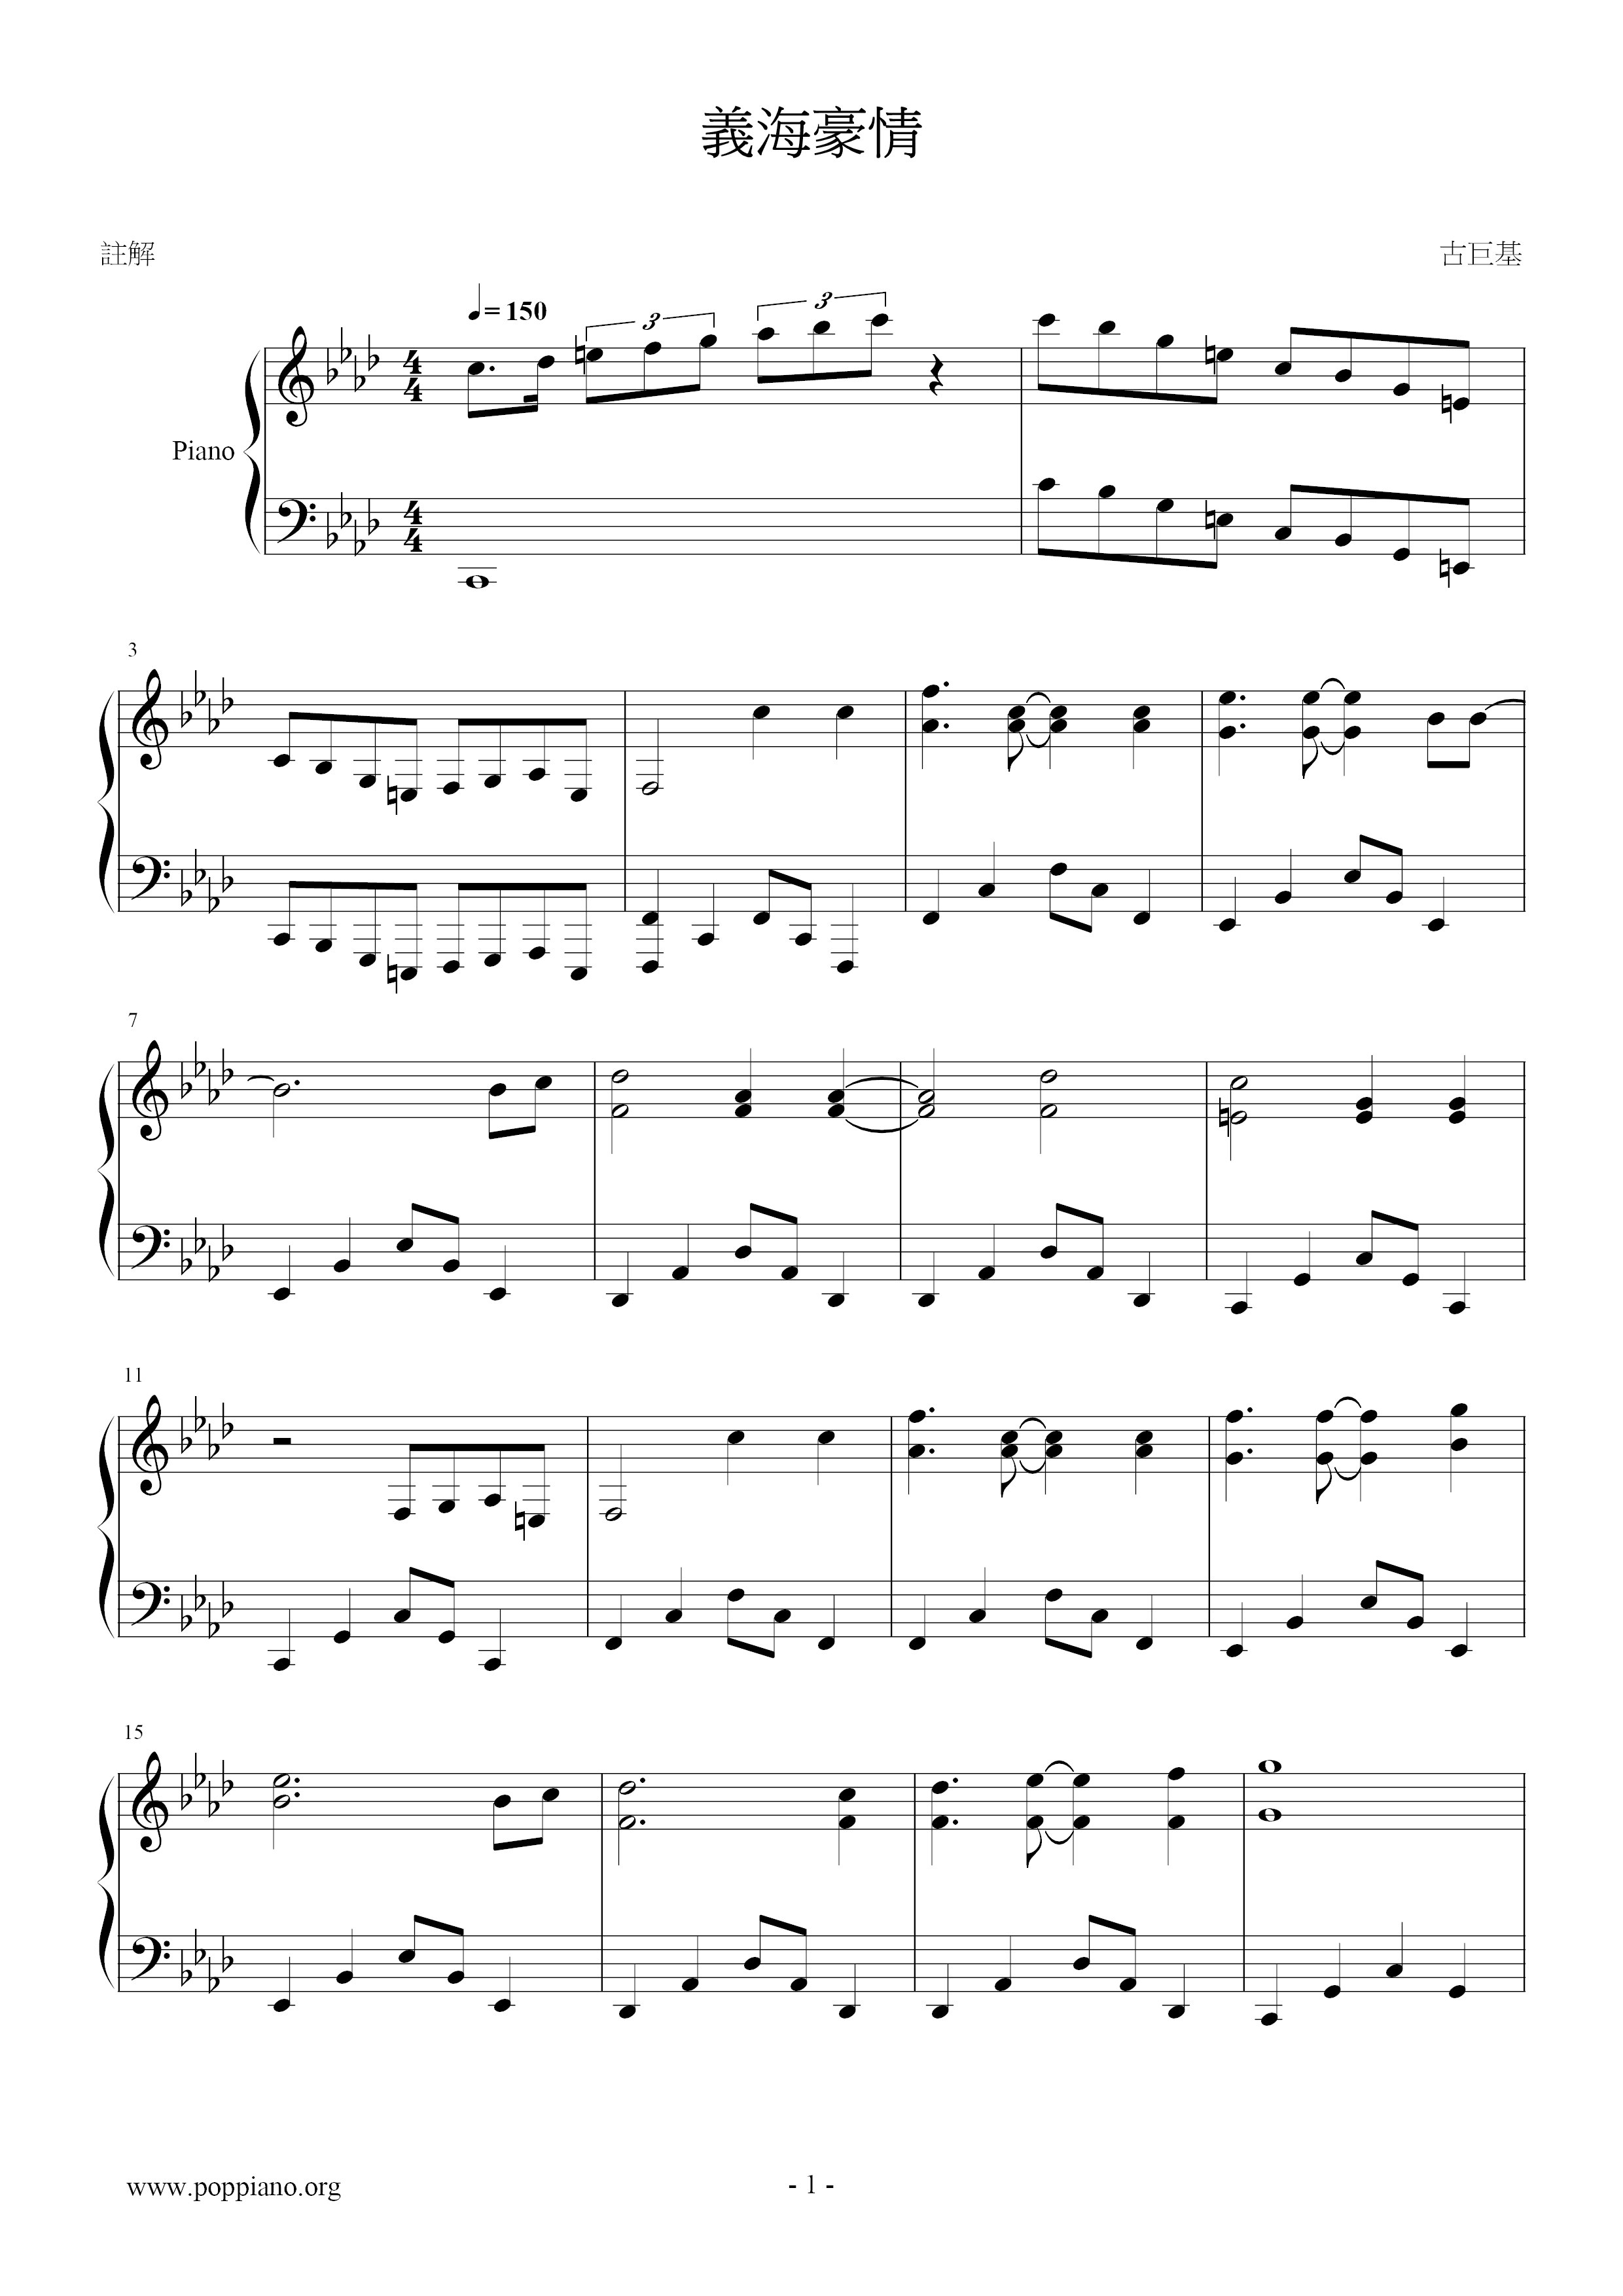 Yi Hai Hao Qing Score